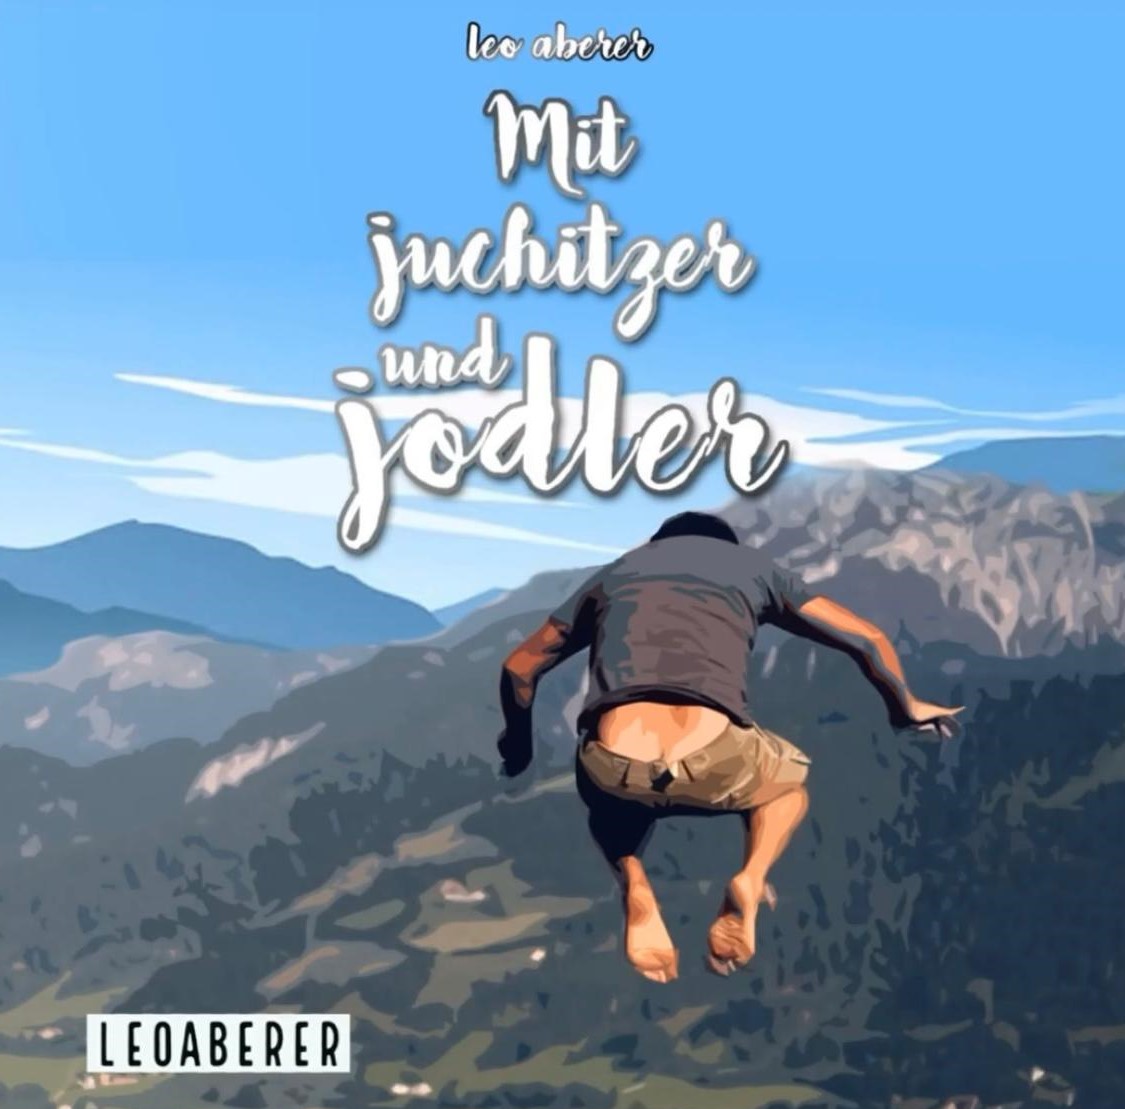 Leo Aberer - Mit Juchitzer und Jodler